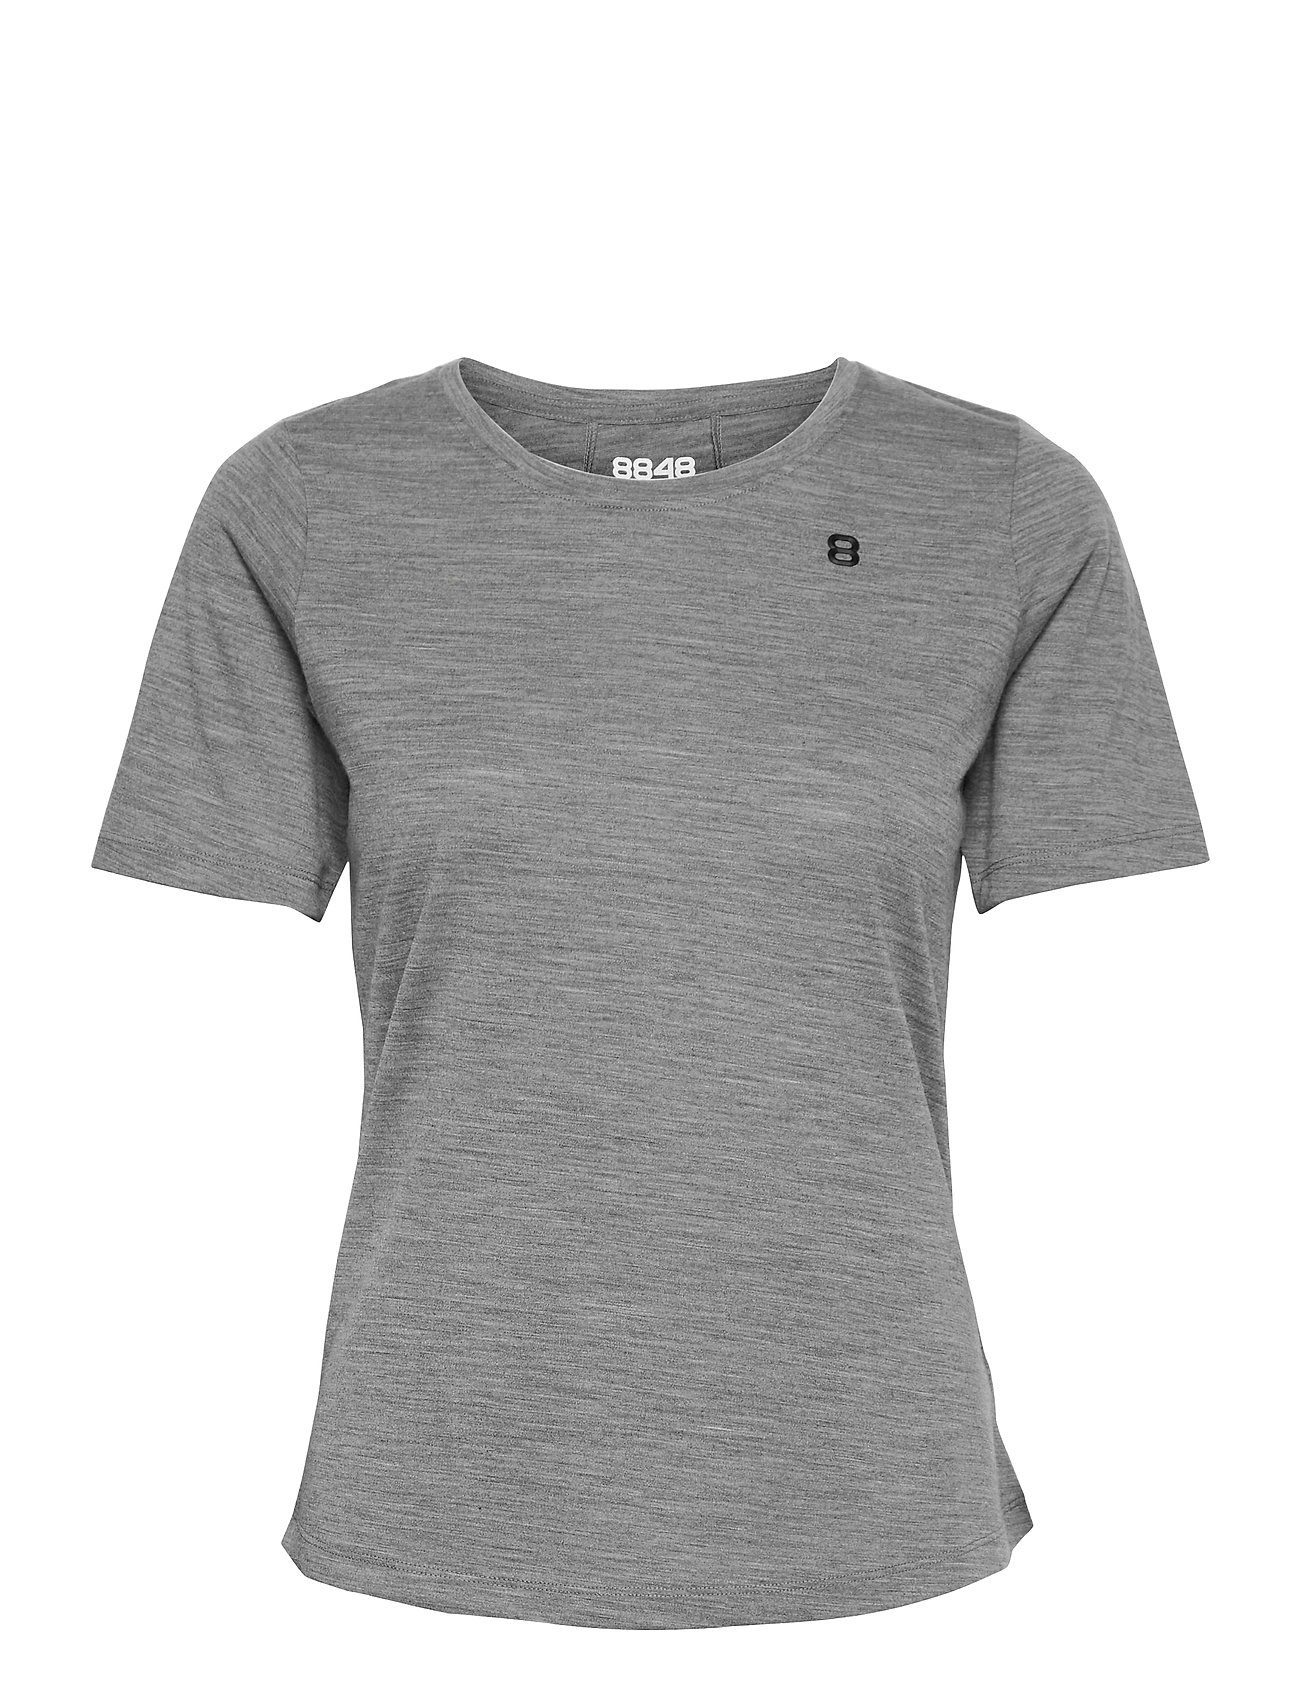 Twig W Tee T-shirts & Tops Short-sleeved Harmaa 8848 Altitude